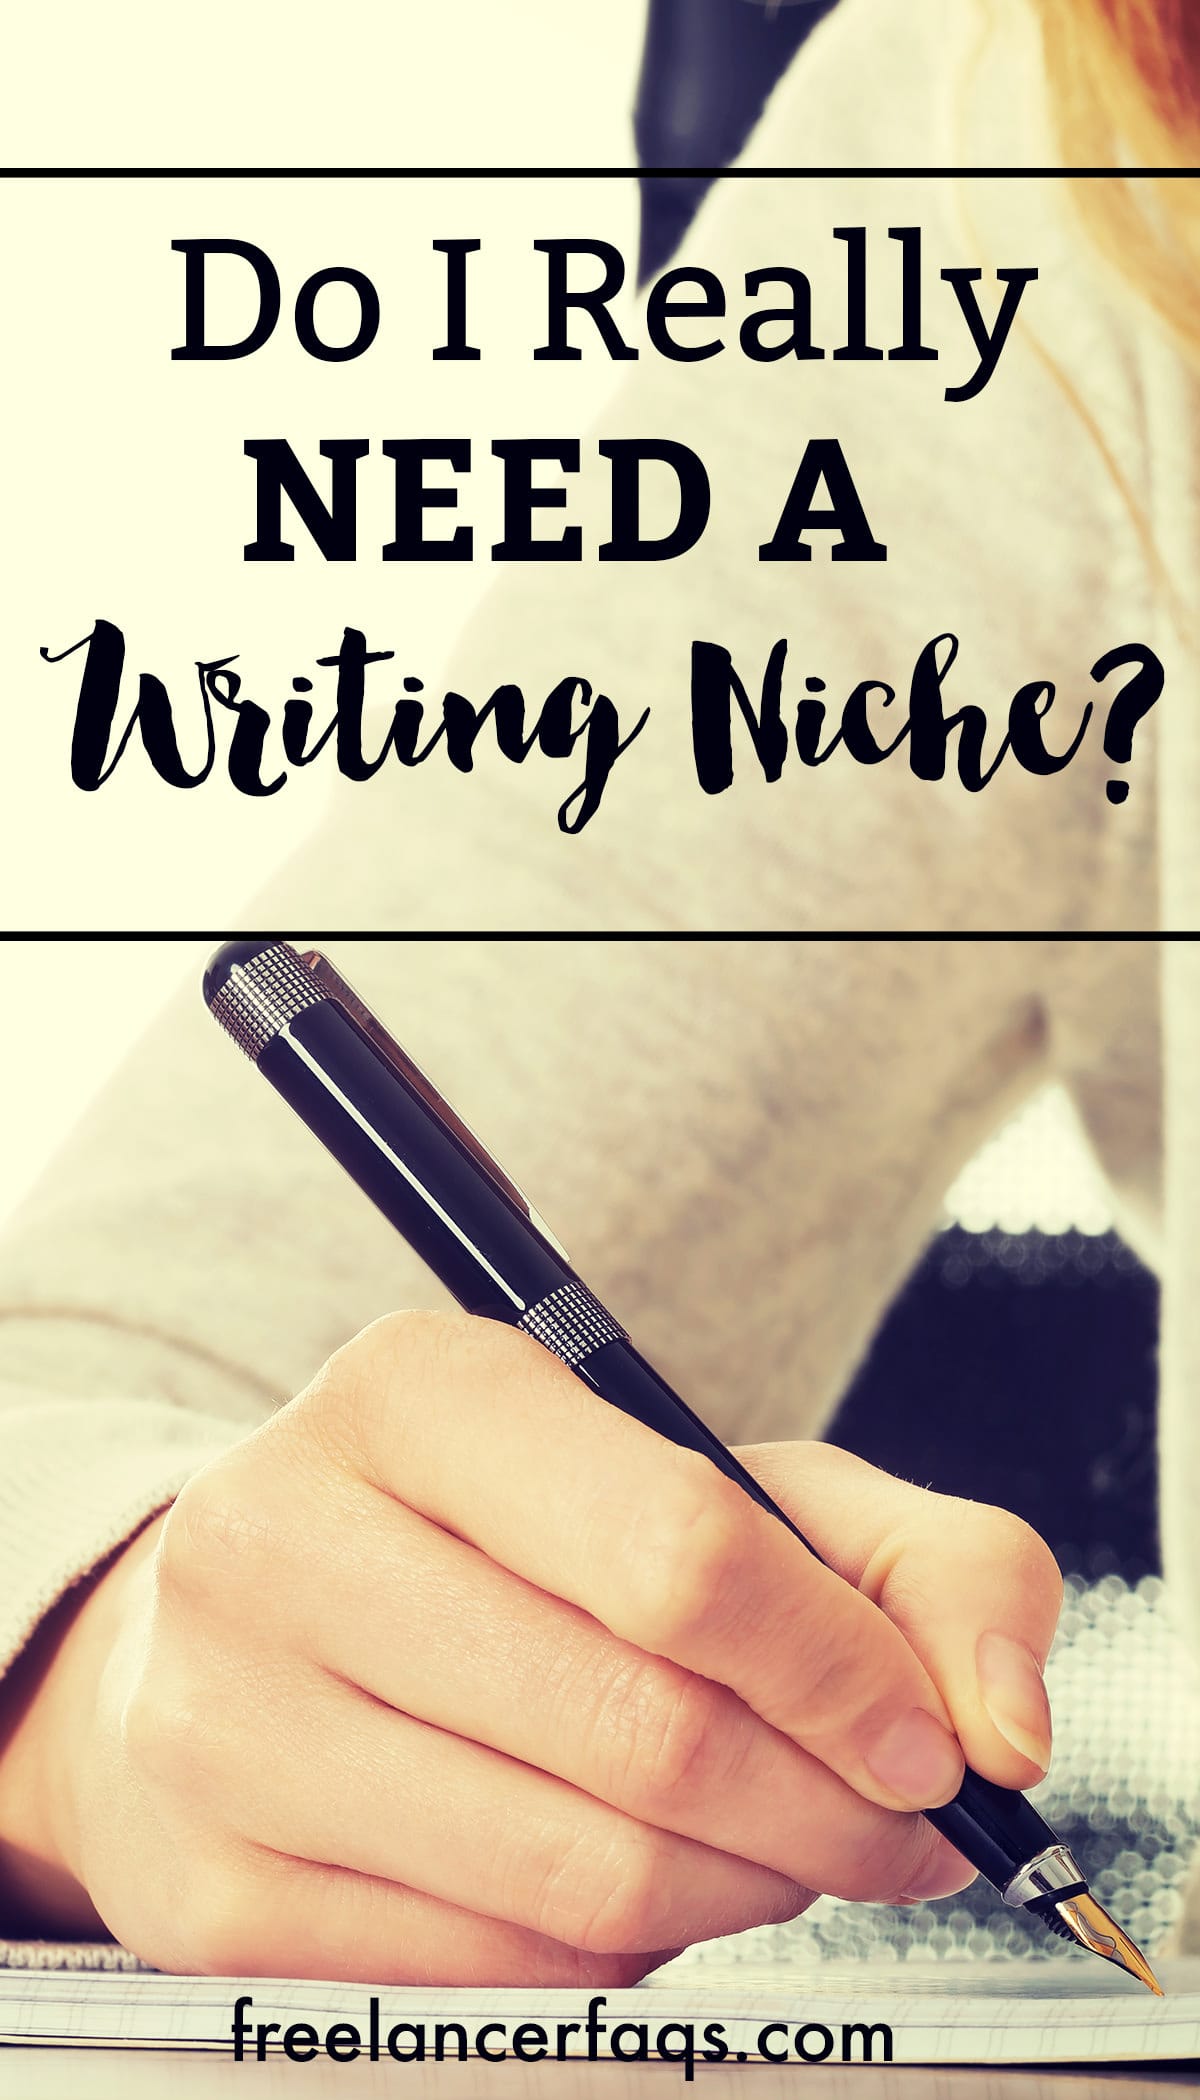 Do I Really Need a Writing Niche?